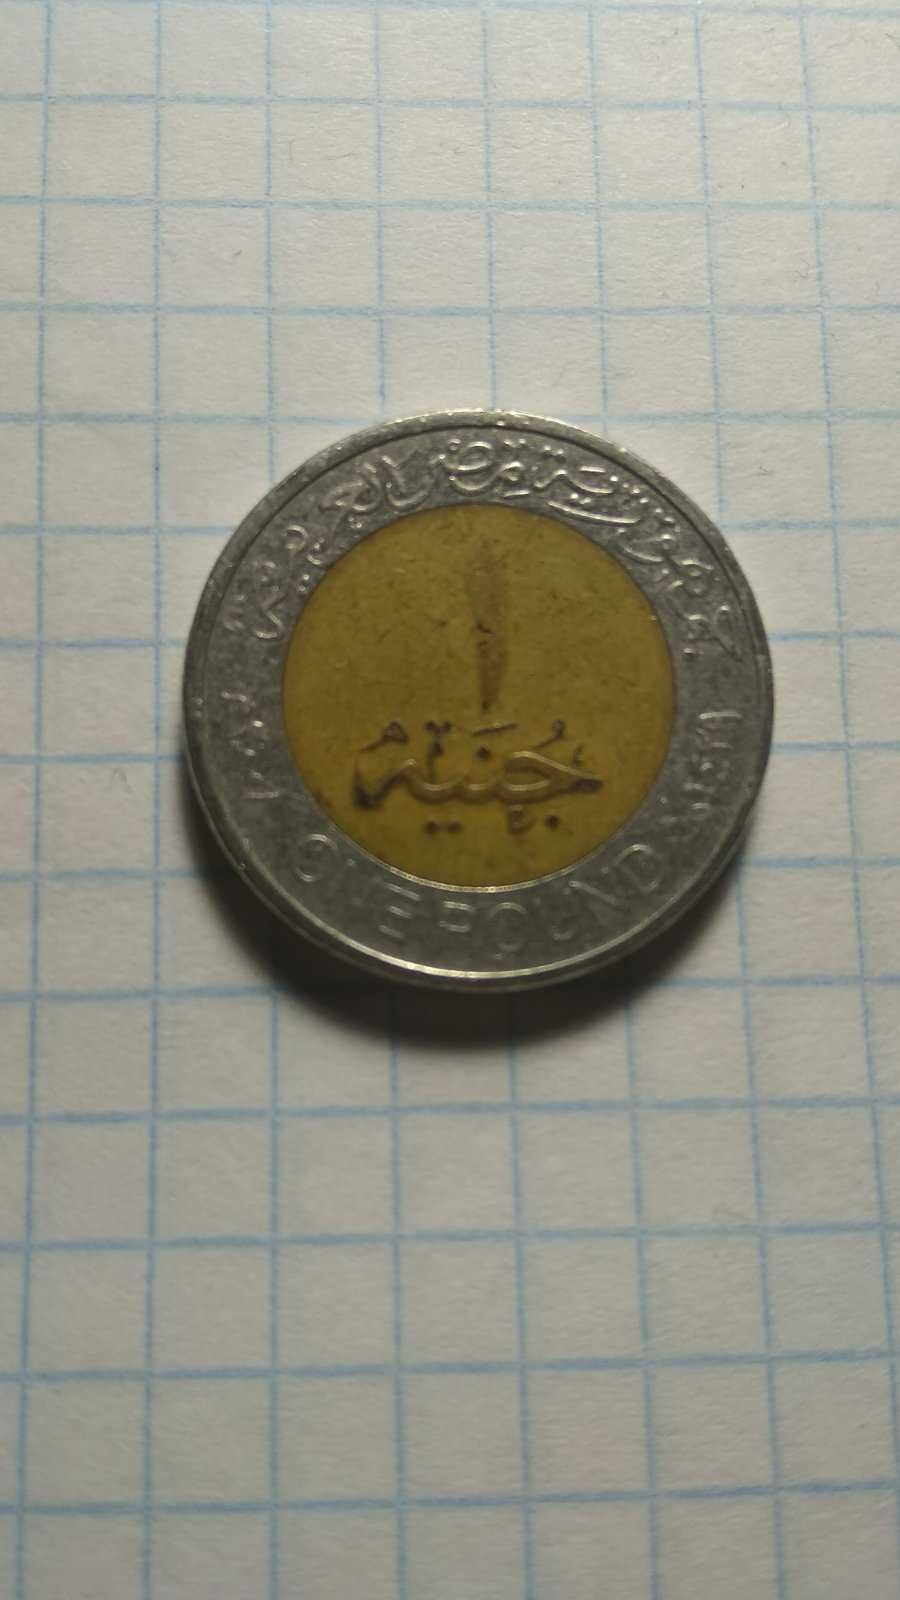 10, 25 рублей 1961 года. Один фунт. Єгипет. 1 рубль 1938 года.